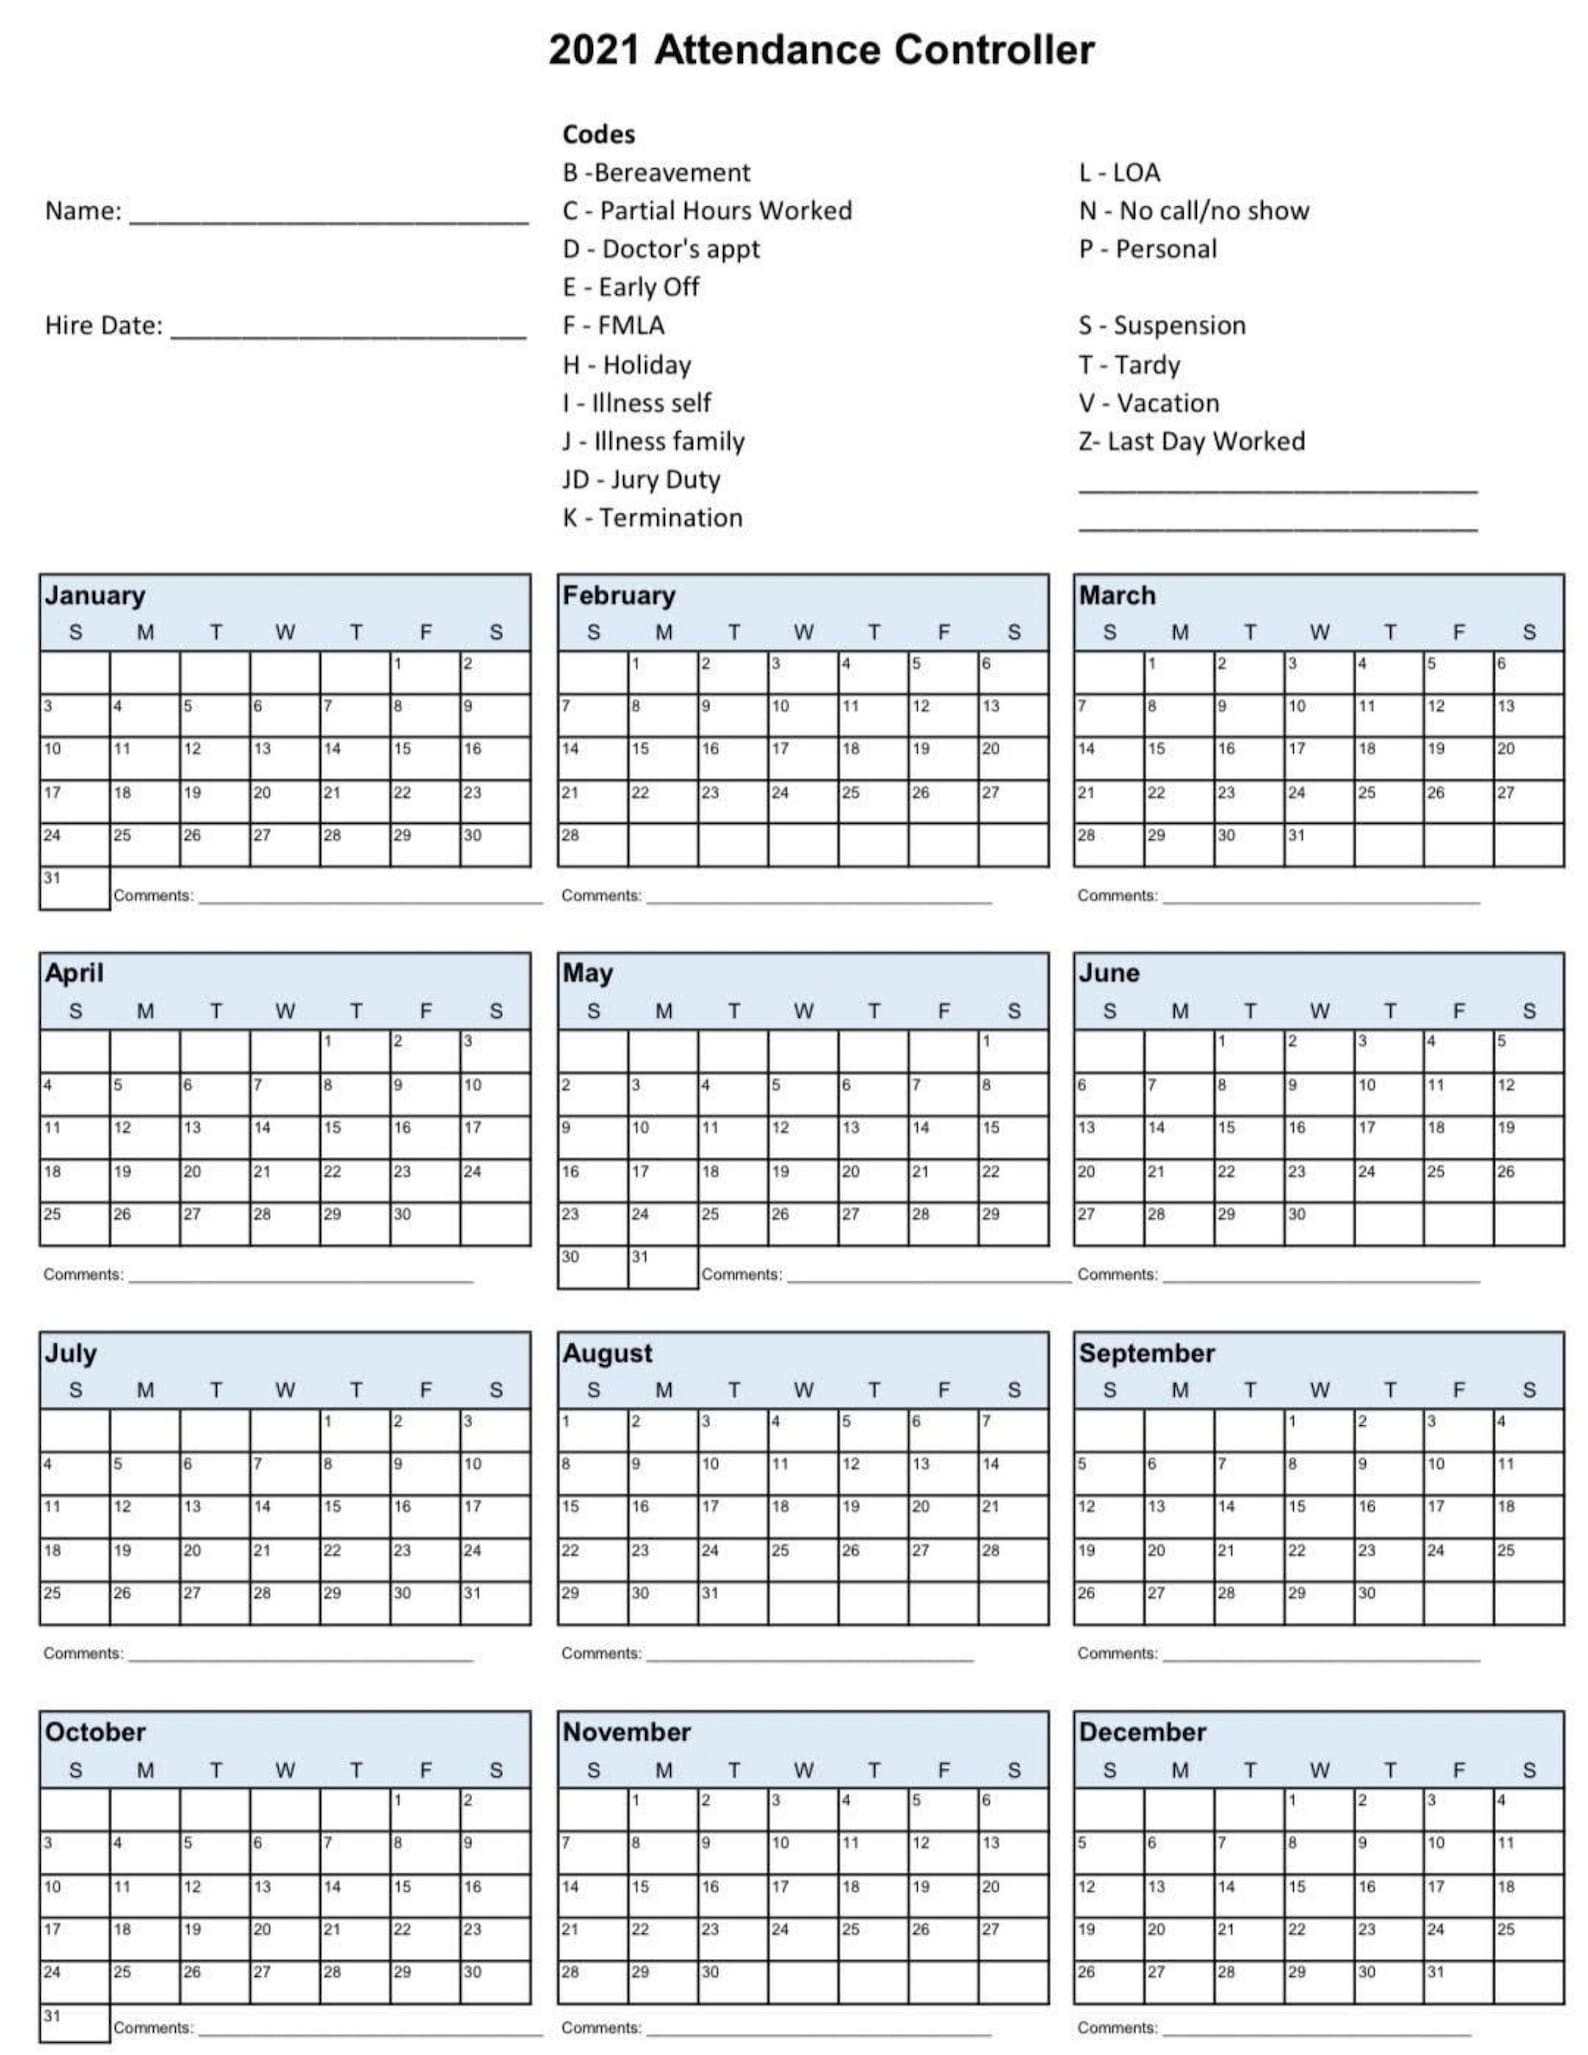 2021 Employee School Attendance Tracker Calendar Employee-Free Employee Attendance Calendar 2021